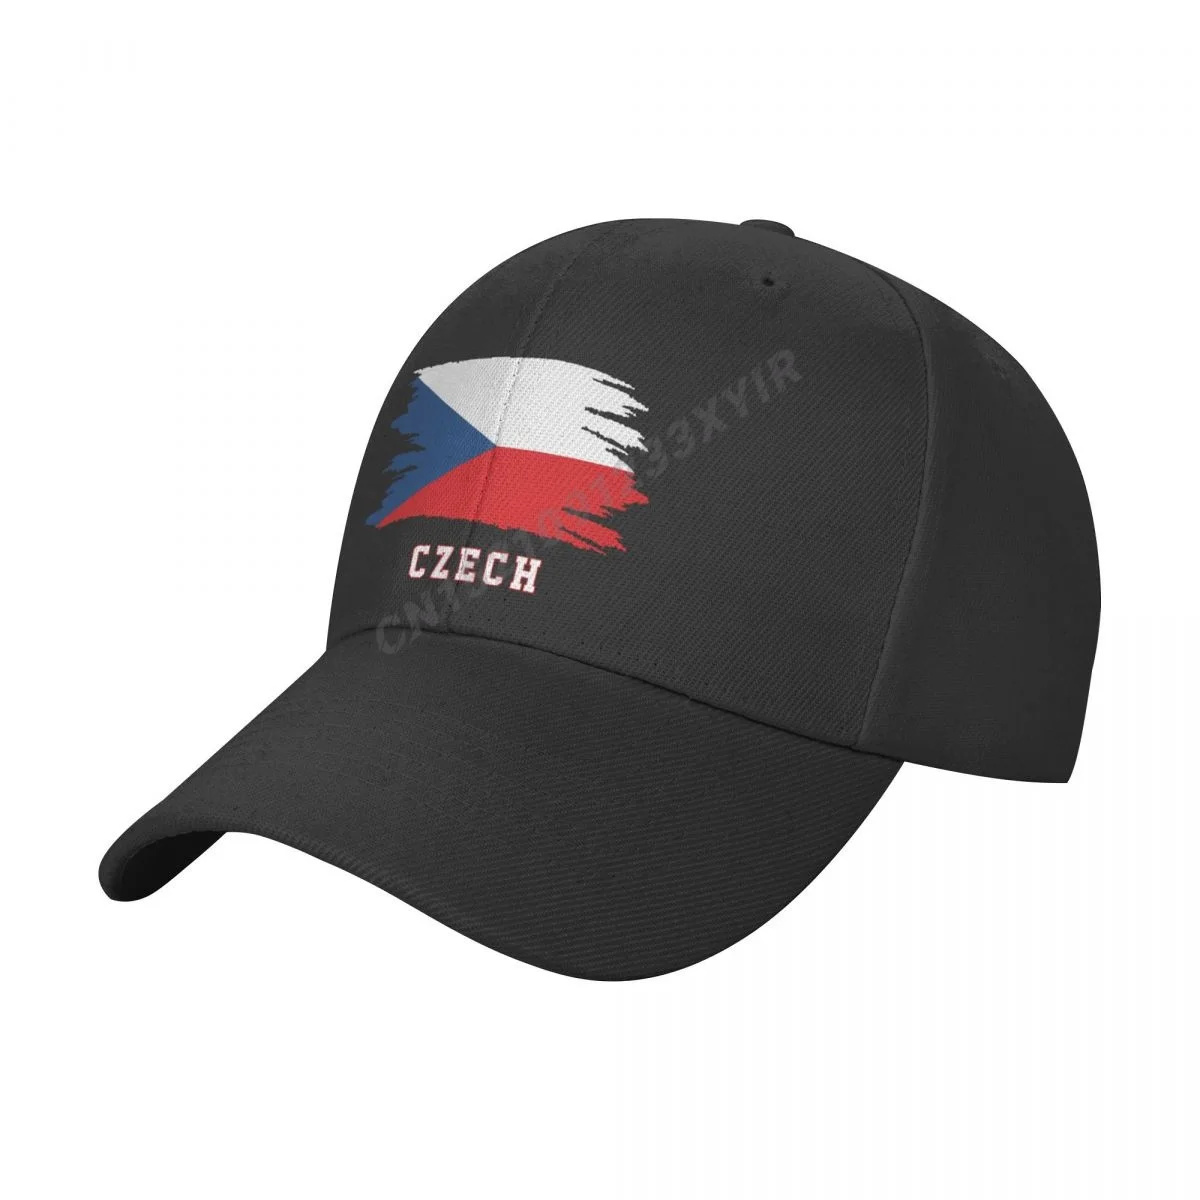 

Baseball Cap Czech Republic Flag Cool Czechs Fans Wild Sun Shade Peaked Adjustable Outdoor Caps for Men Women